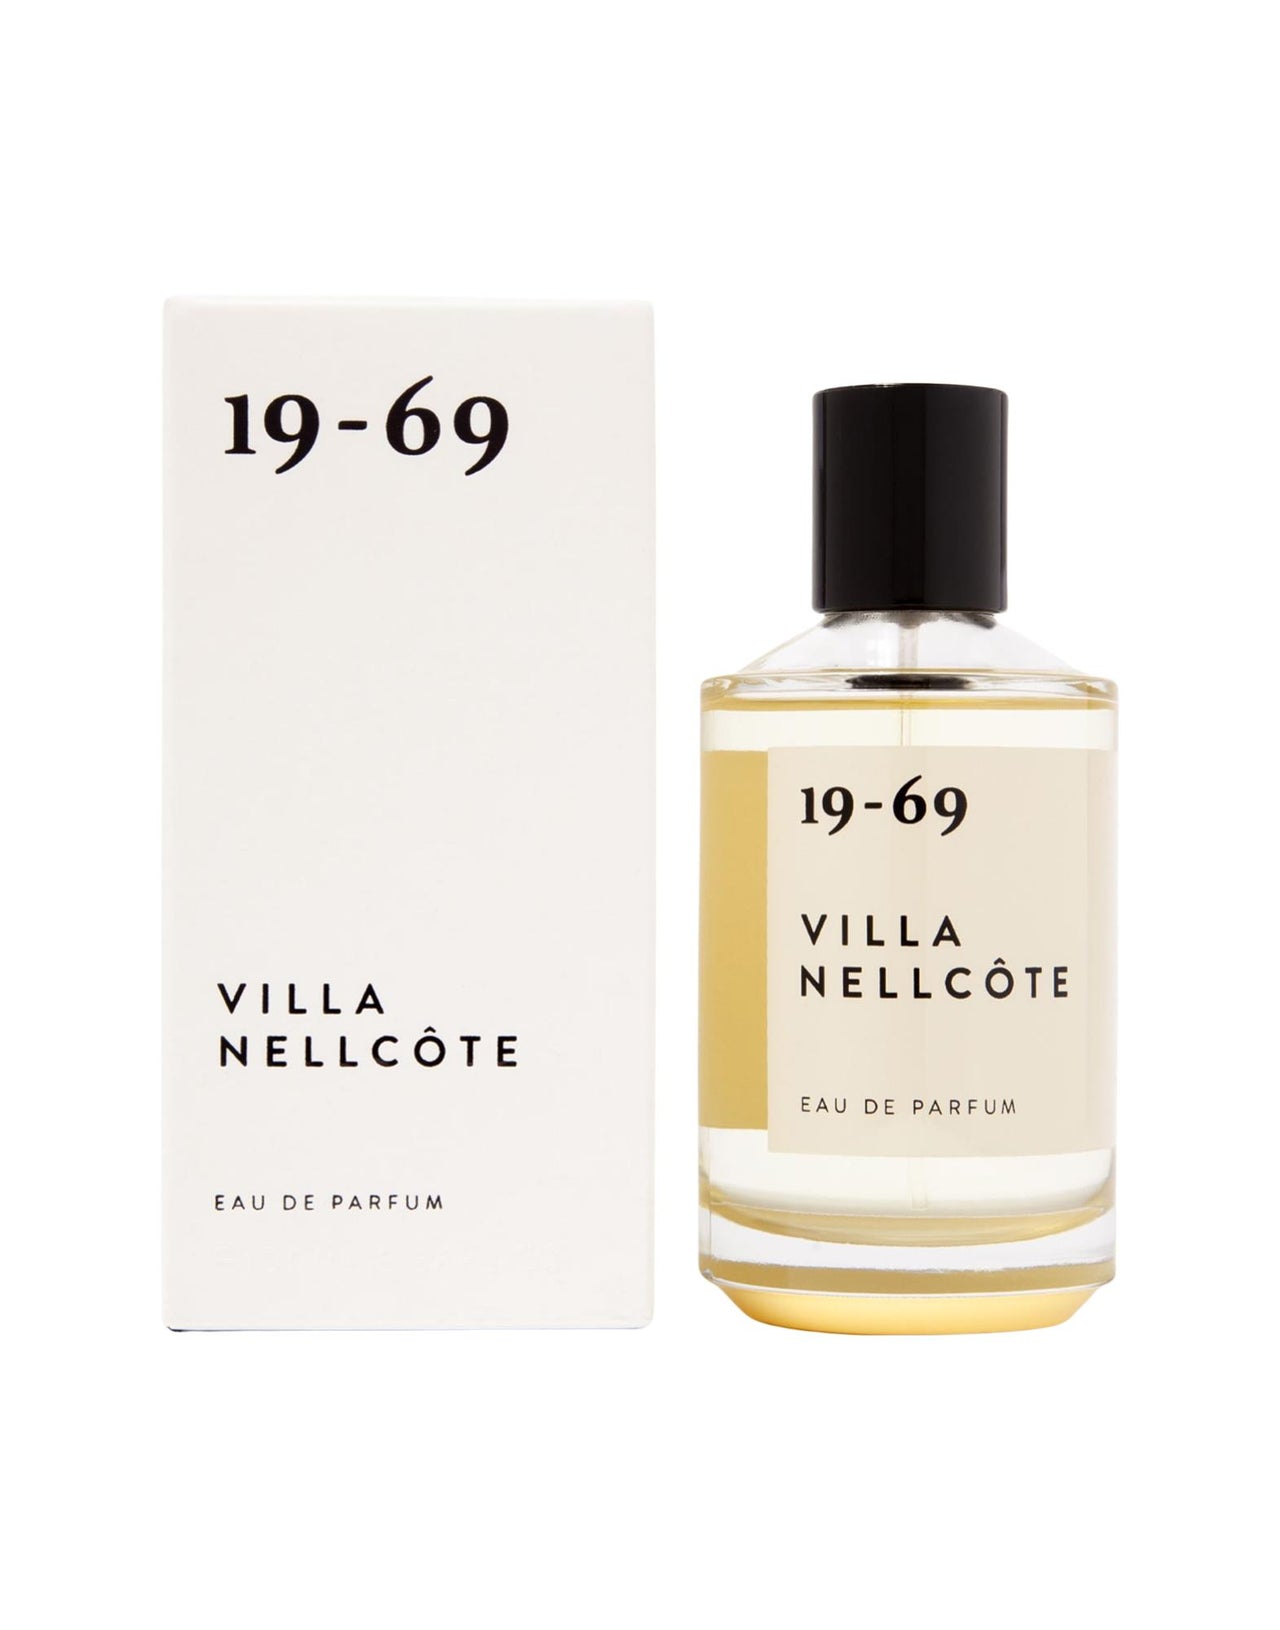 19-69 Eau De Parfum Villa Nellcote